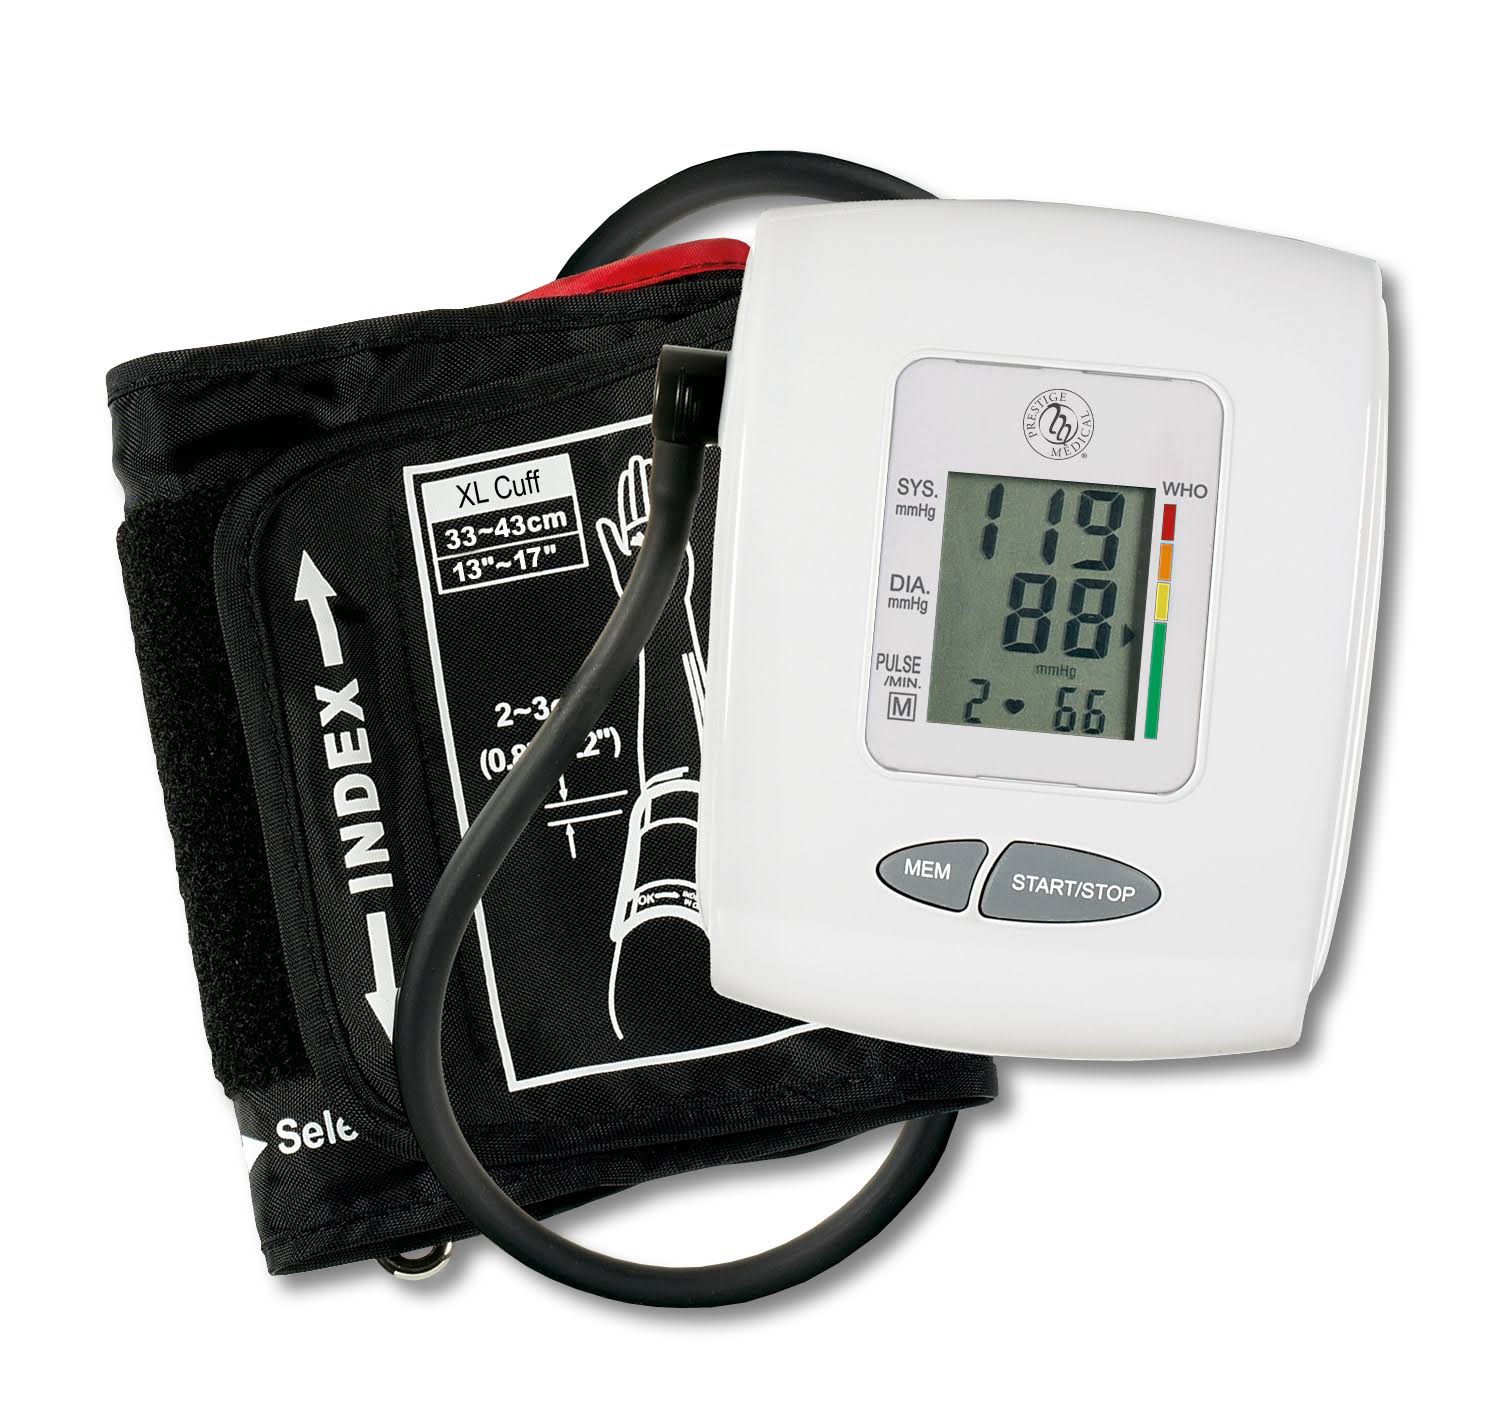 Prestige Medical HM-30-OB Large Adult Healthmate Digital Blood Pressure Monitor